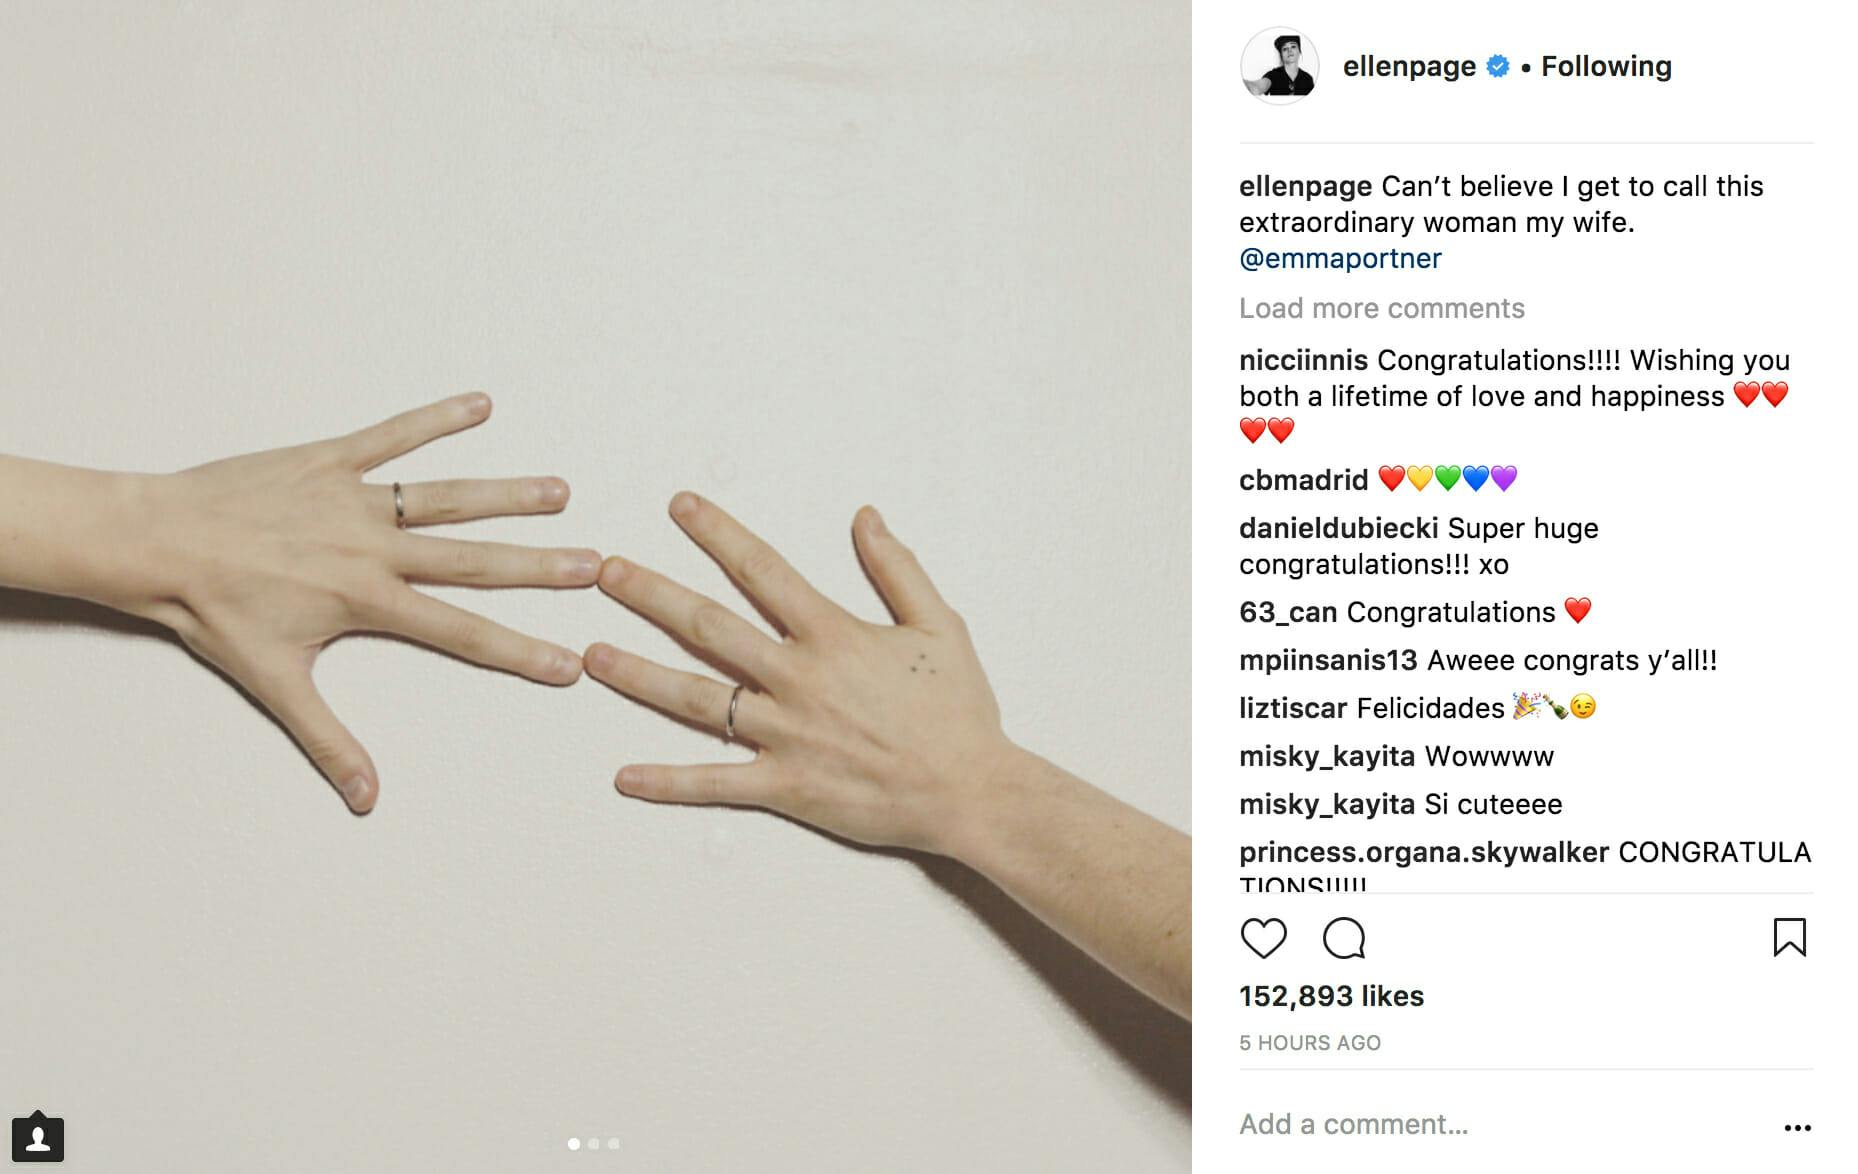 Ellen Page announced via Instagram that she married dancer Emma Portner.